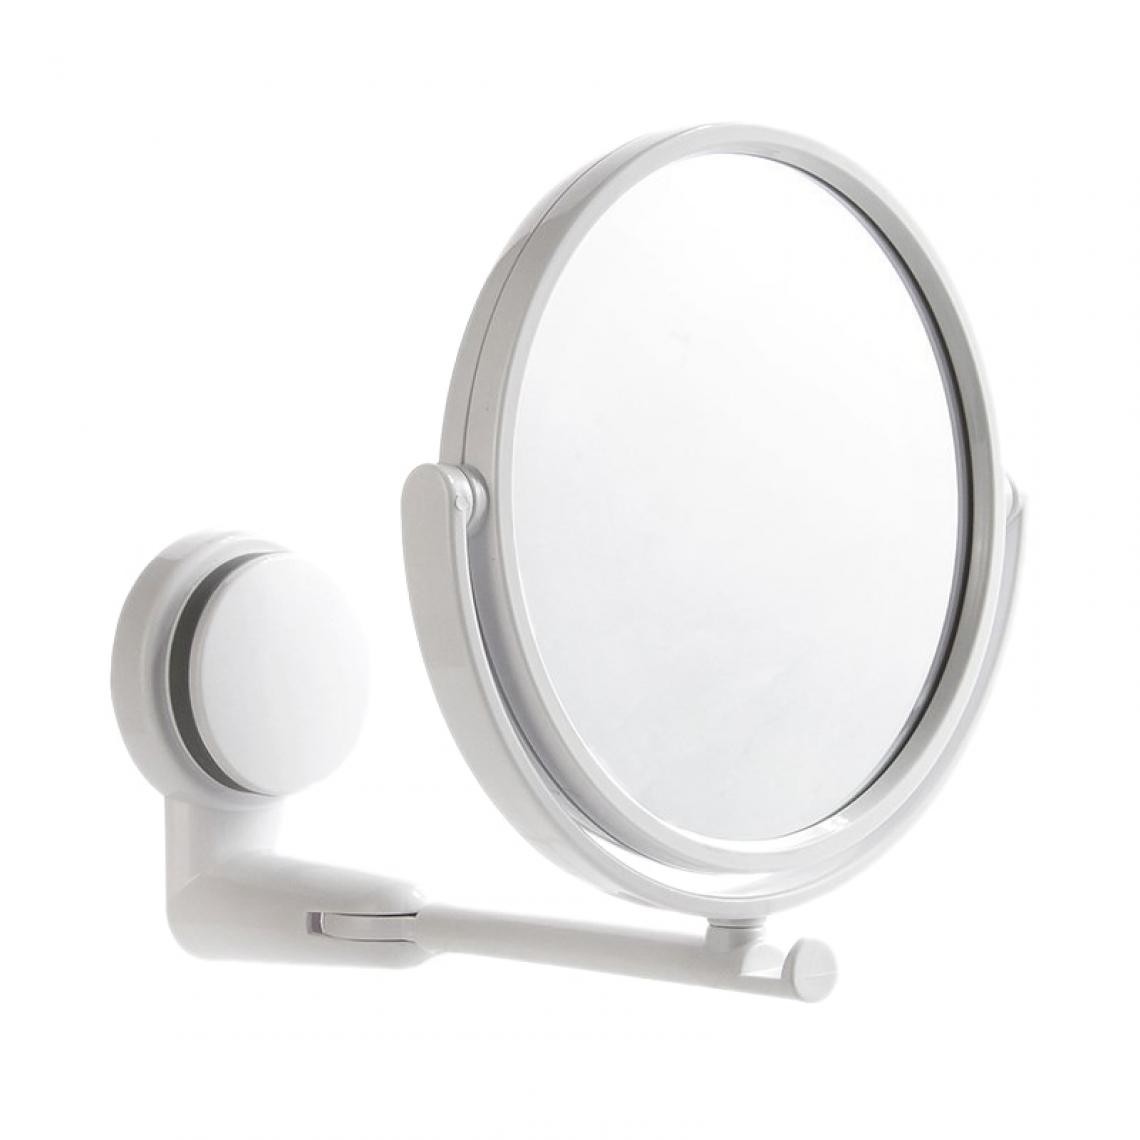 Universal - Zoom sur le maquillage, le rasage, le miroir, la suspension murale à 360 ° | miroir de bain.(blanche) - Miroir de salle de bain